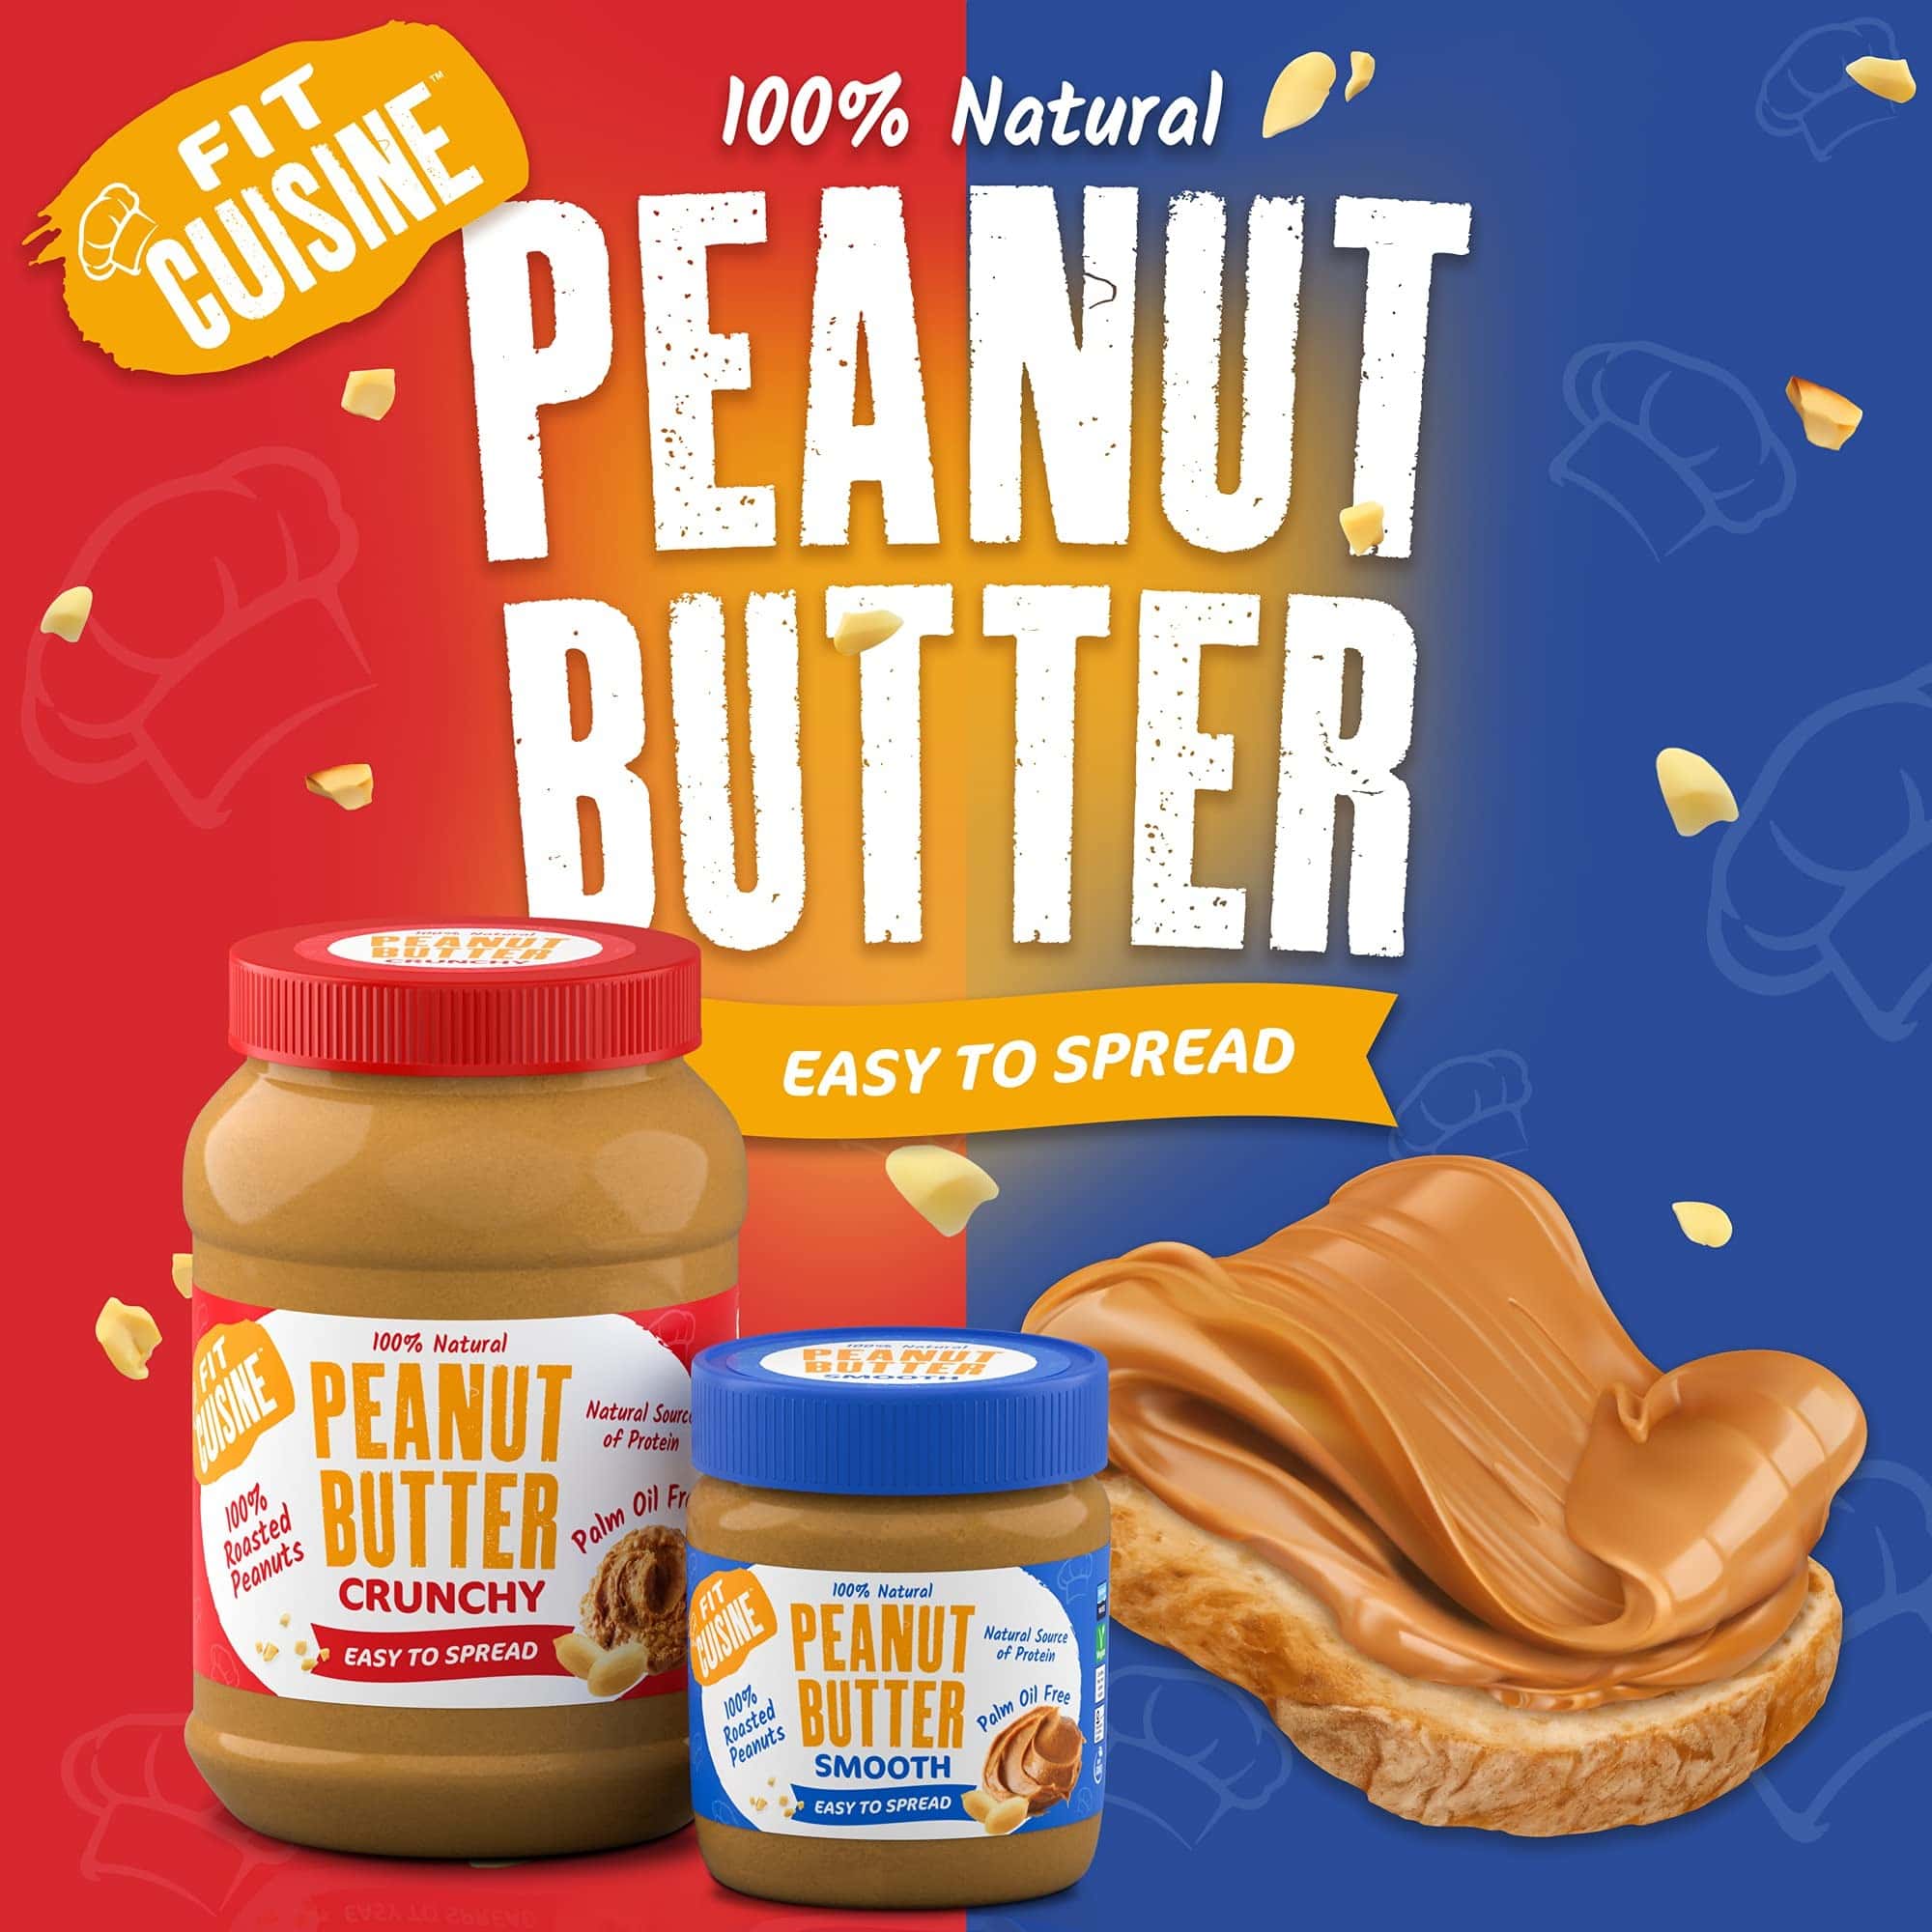 Applied Nutrition - Peanut Butter (350g) - 9353cf0a9235e6098b05c1b1d6050a76